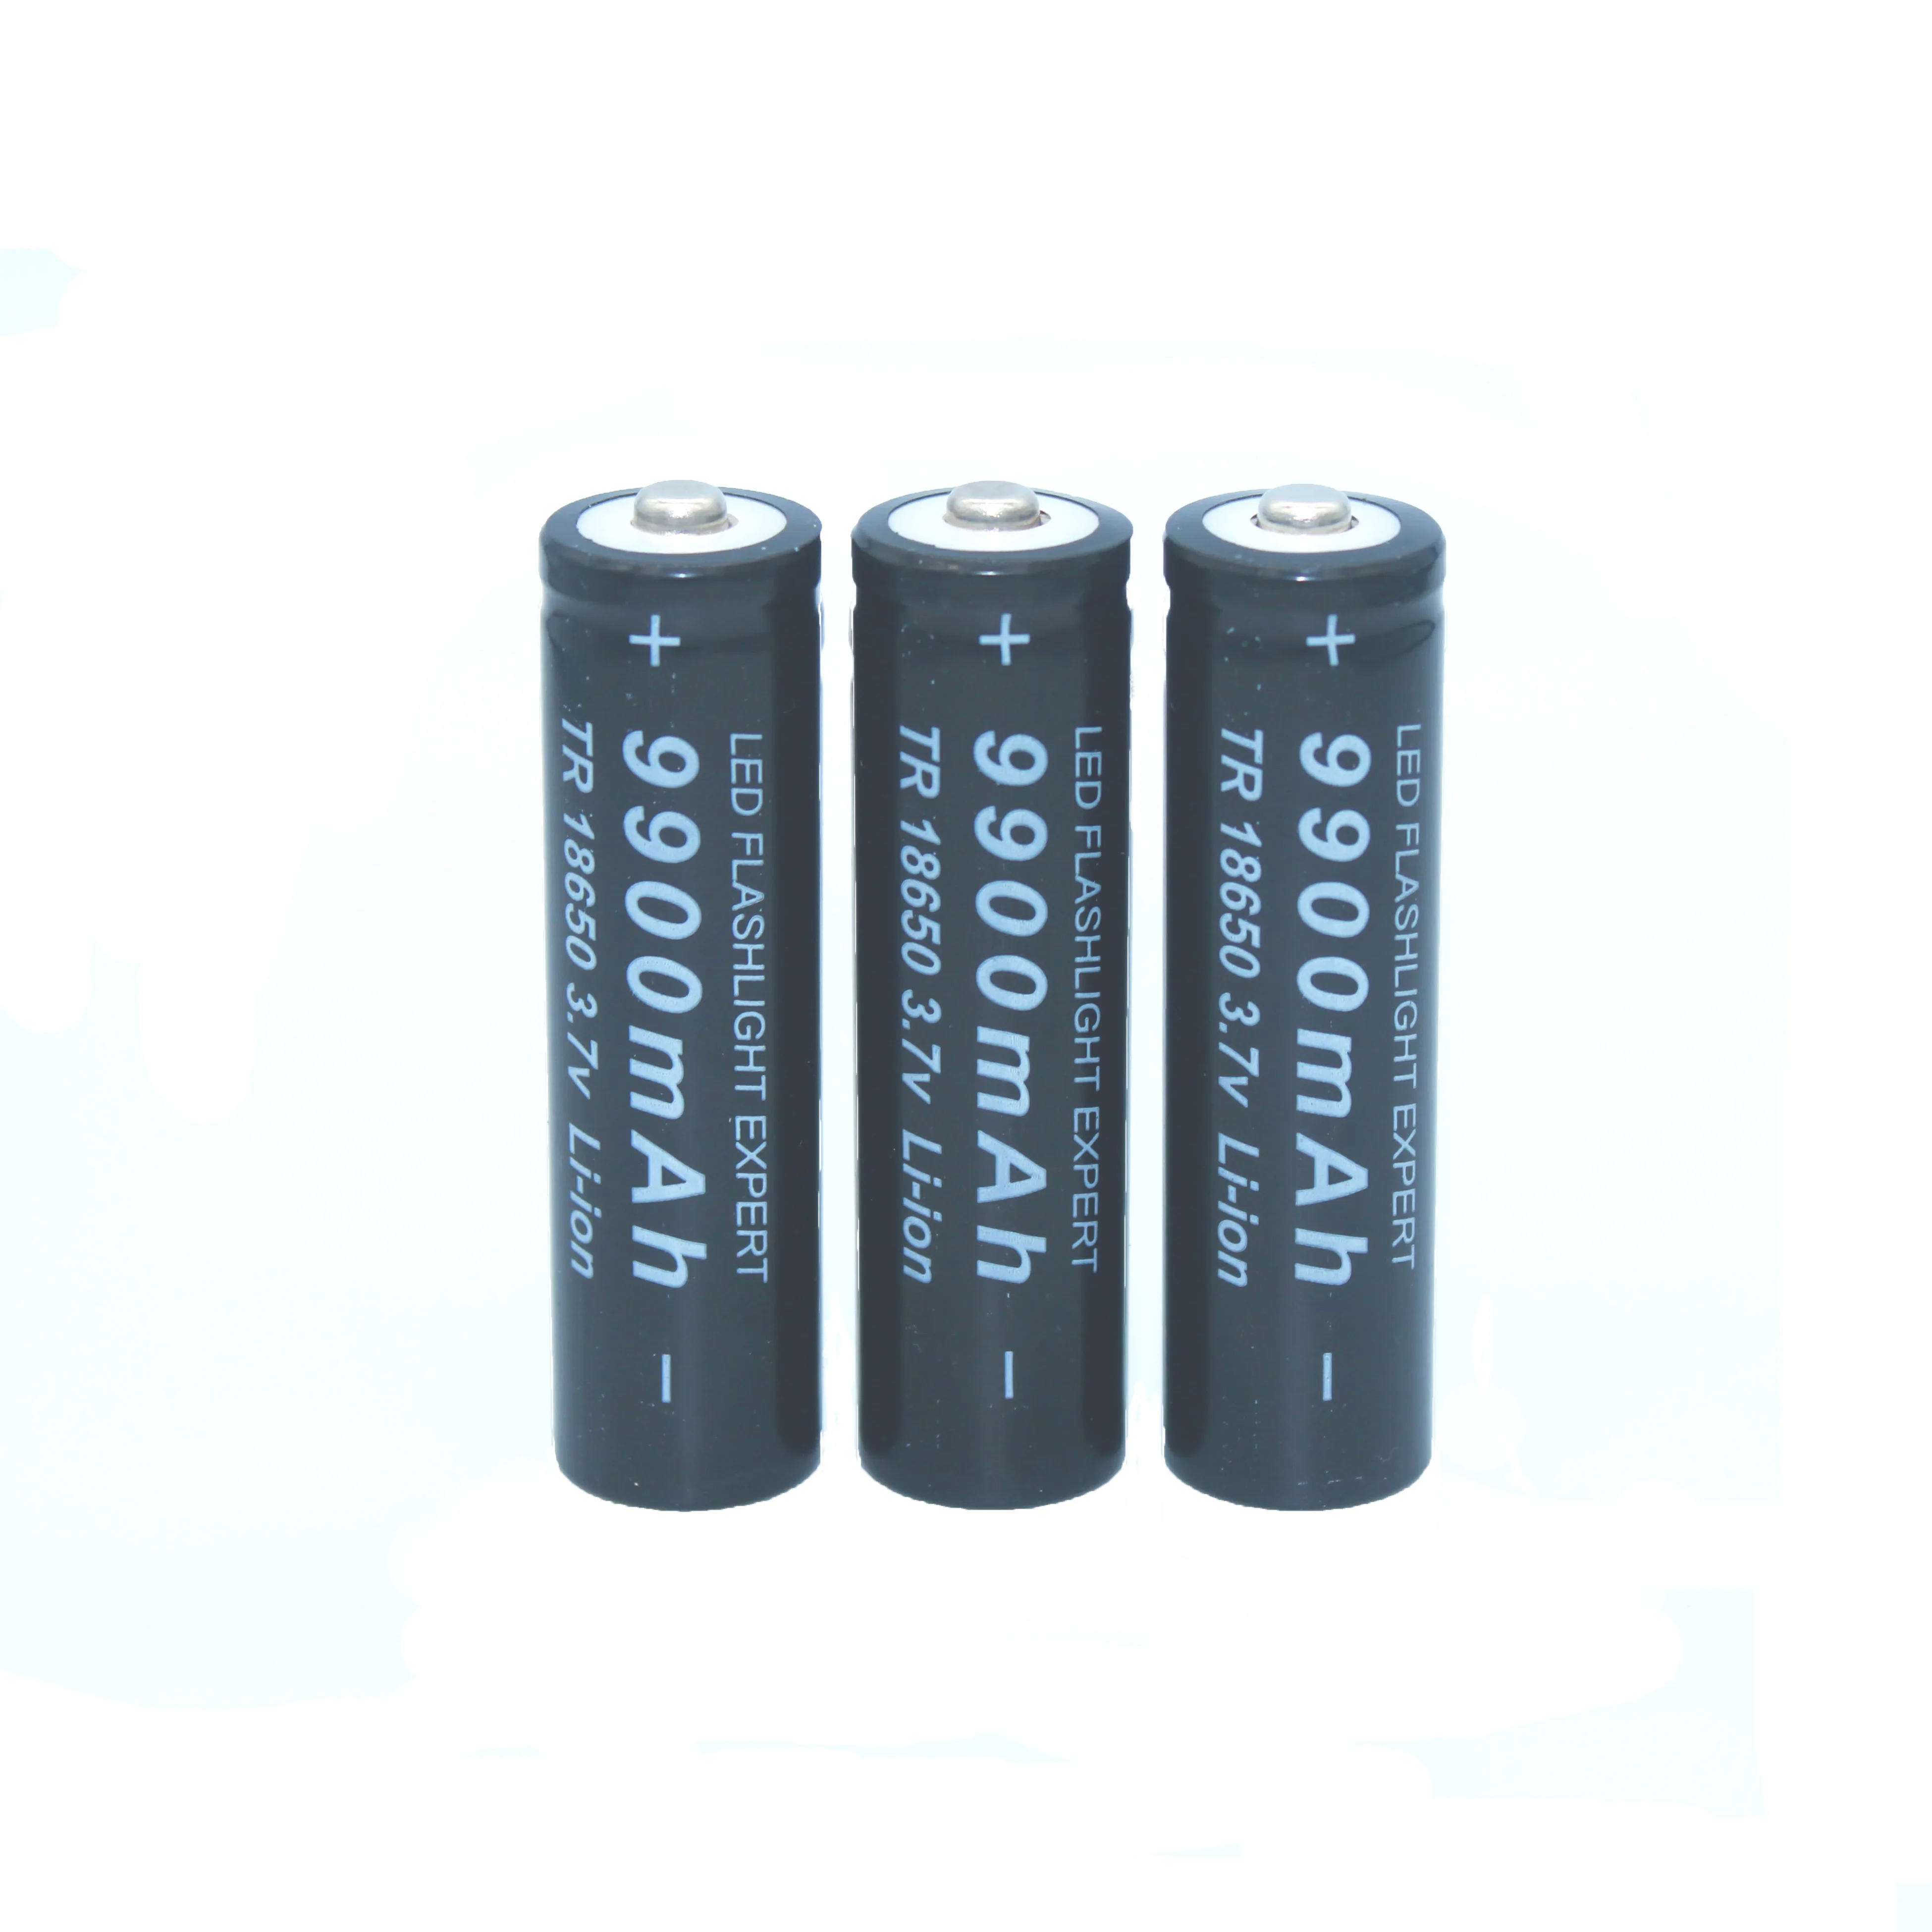 18650 bateria de alta qualidade 9900 mah 3.7 v 18650 baterias li-ion bateria recarregavel para lanterna tocha + frete už dyką 4